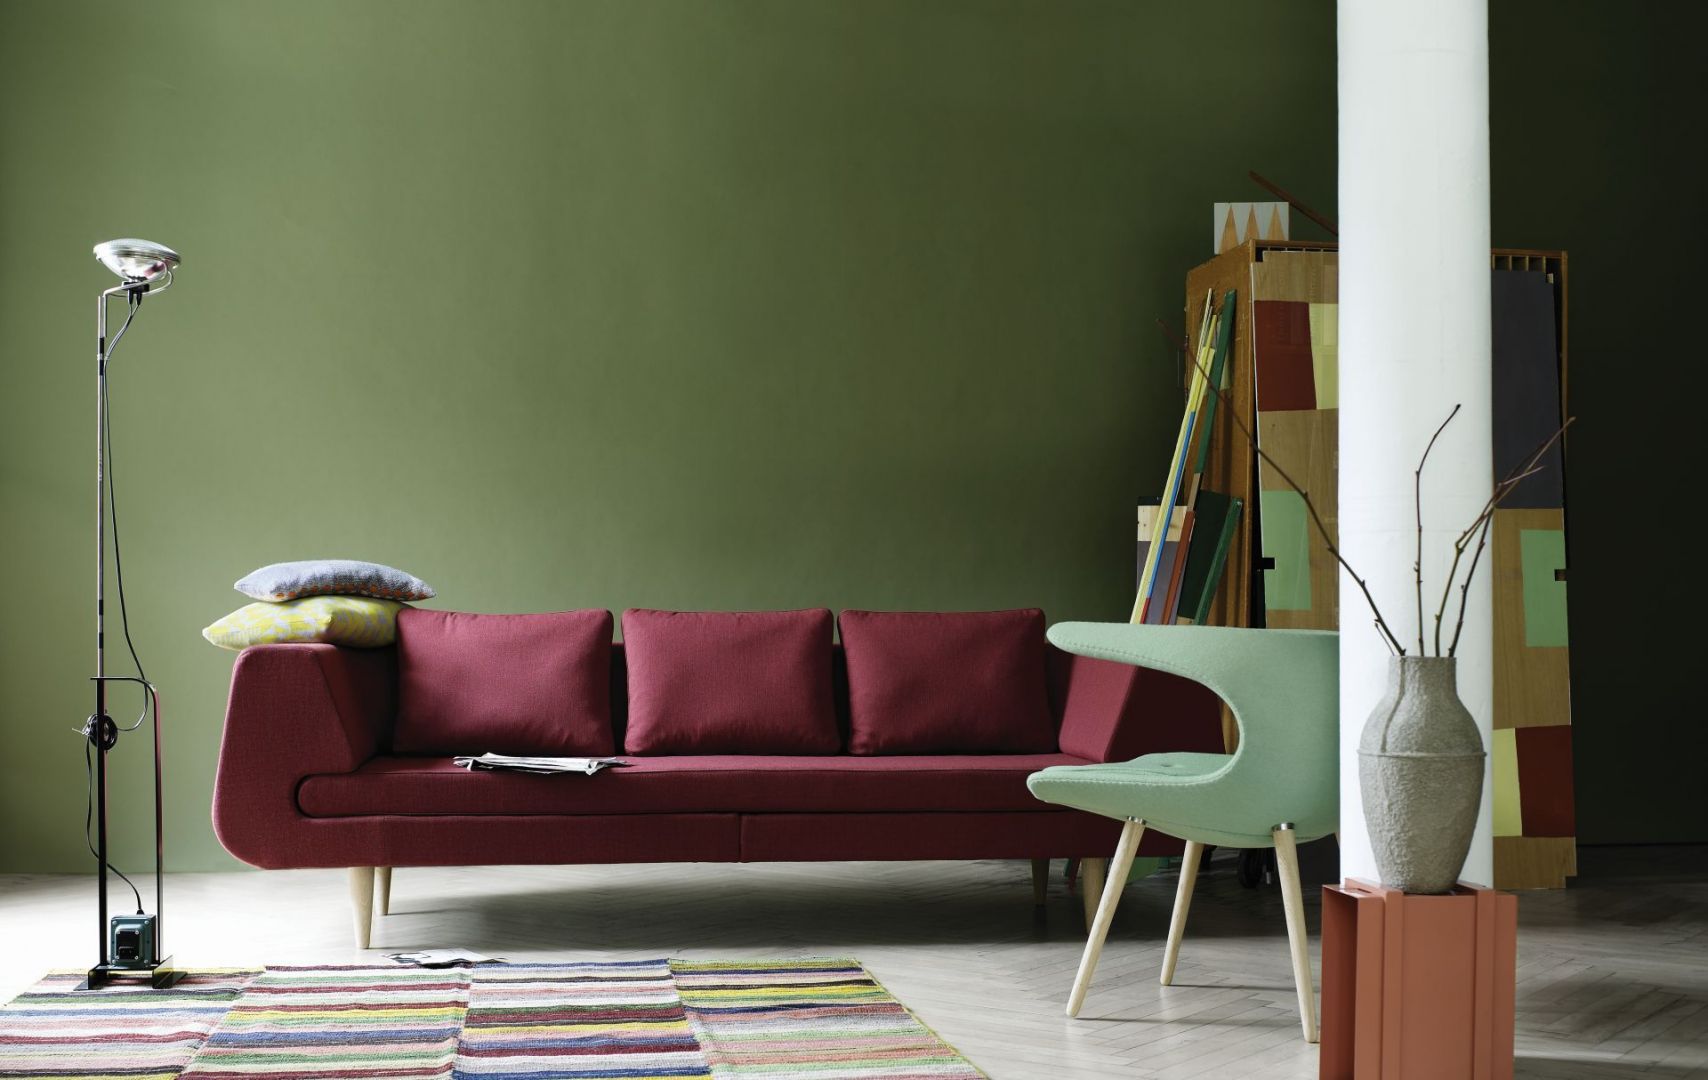 Sofa Mirage łączy w sobie minimalistyczną formę i wyjątkową wygodę. Ciekawym elementem jest cienkie siedzisko, które zostało wsunięte w podłokietnik. Miękkie poduszki oparciowe zapewniają doskonały komfort. Fot. Stouby